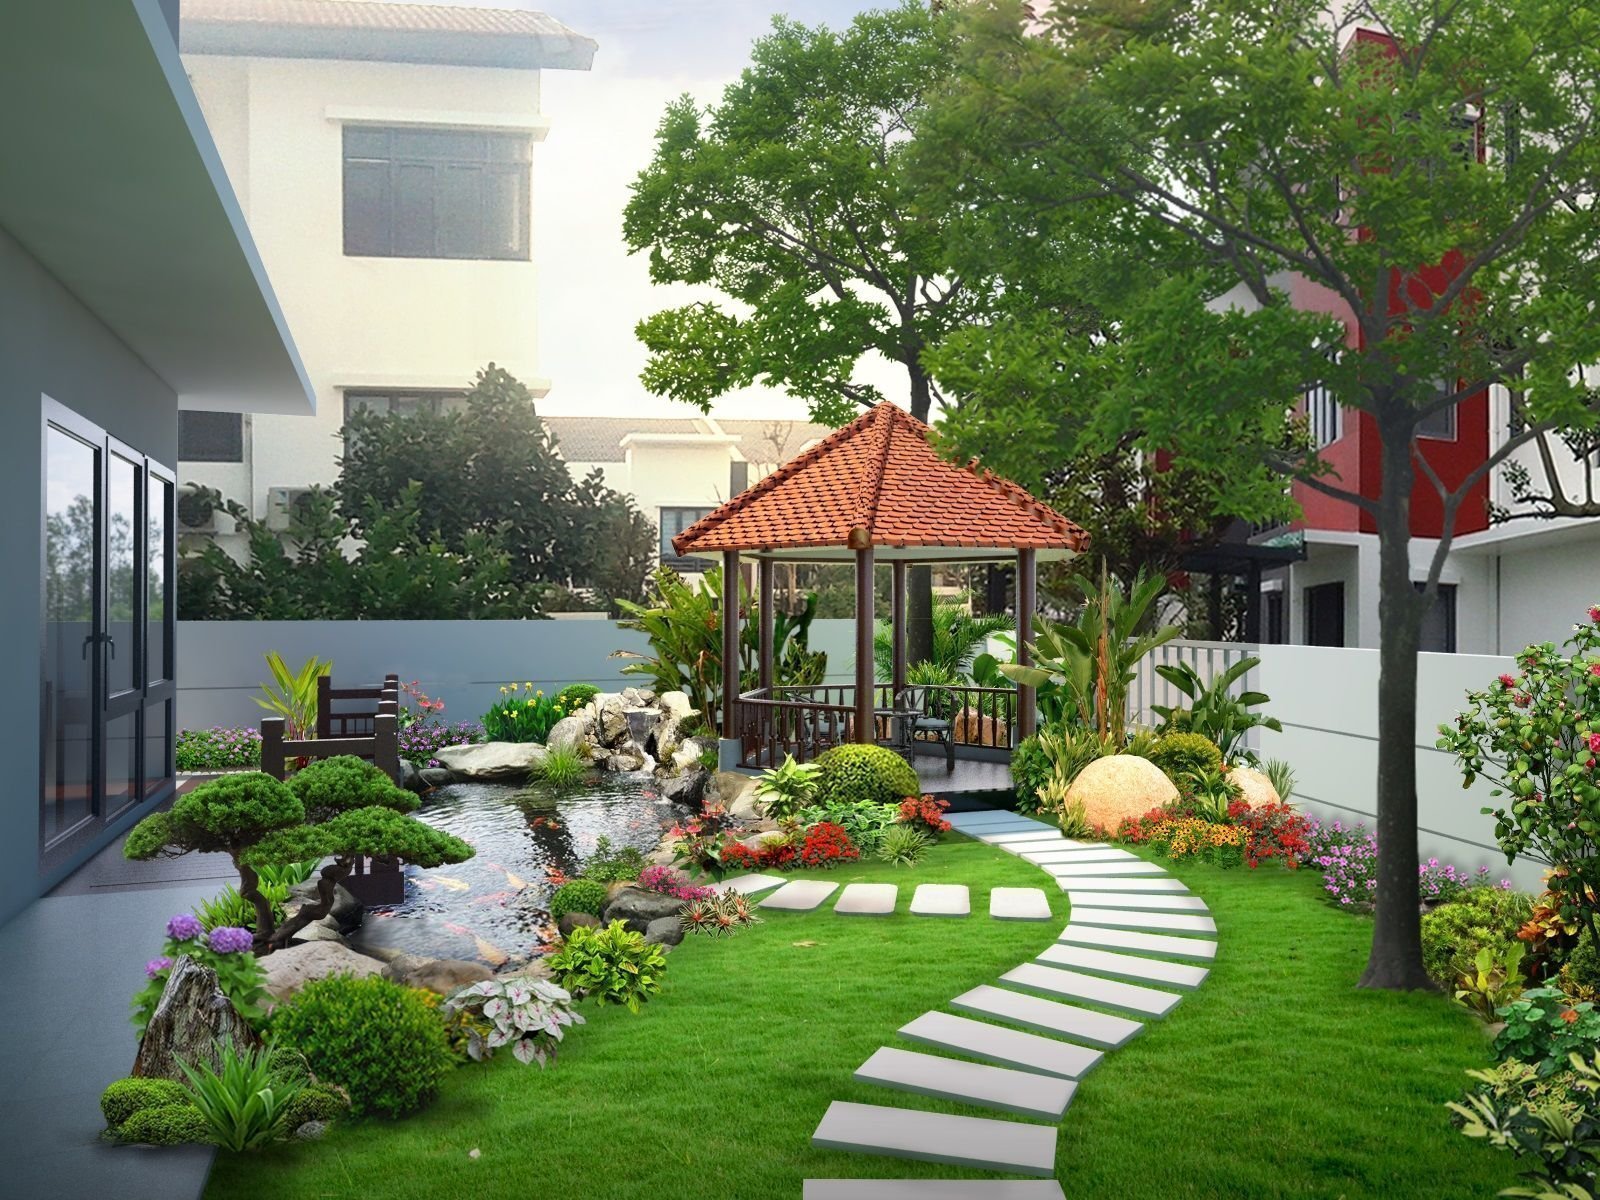 Khái niệm về nhà vườn  Thiết kế qui hoạch nhà vườn